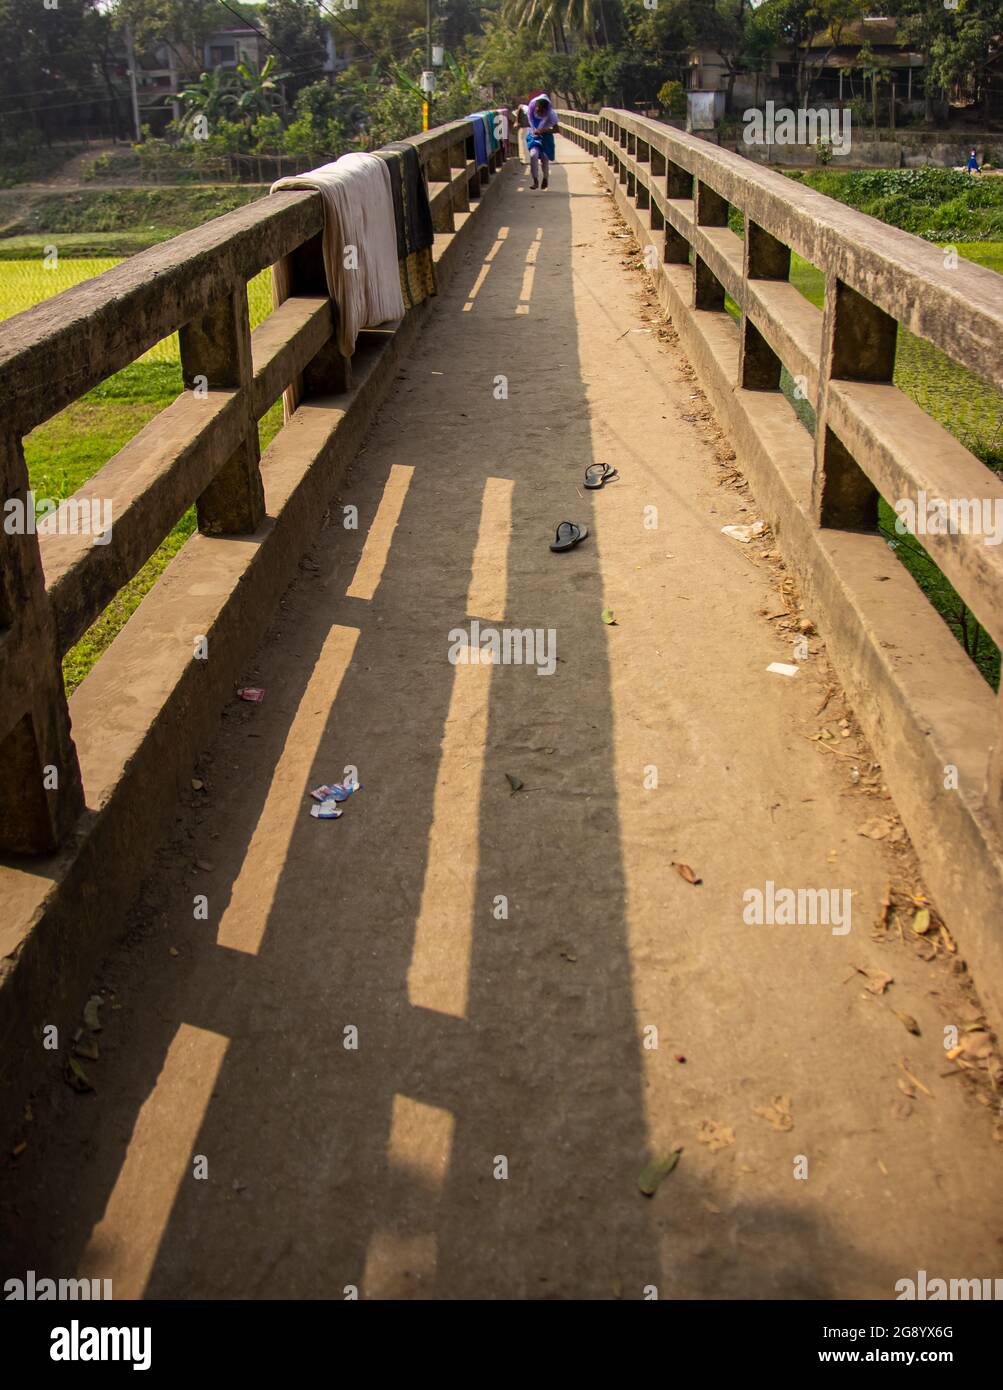 Ein kleines Mädchen, das auf der Brücke läuft. Dieses Bild wurde am 13. Und 2018. Januar aus Dhamrai, Bangladesch, Südasien, aufgenommen Stockfoto